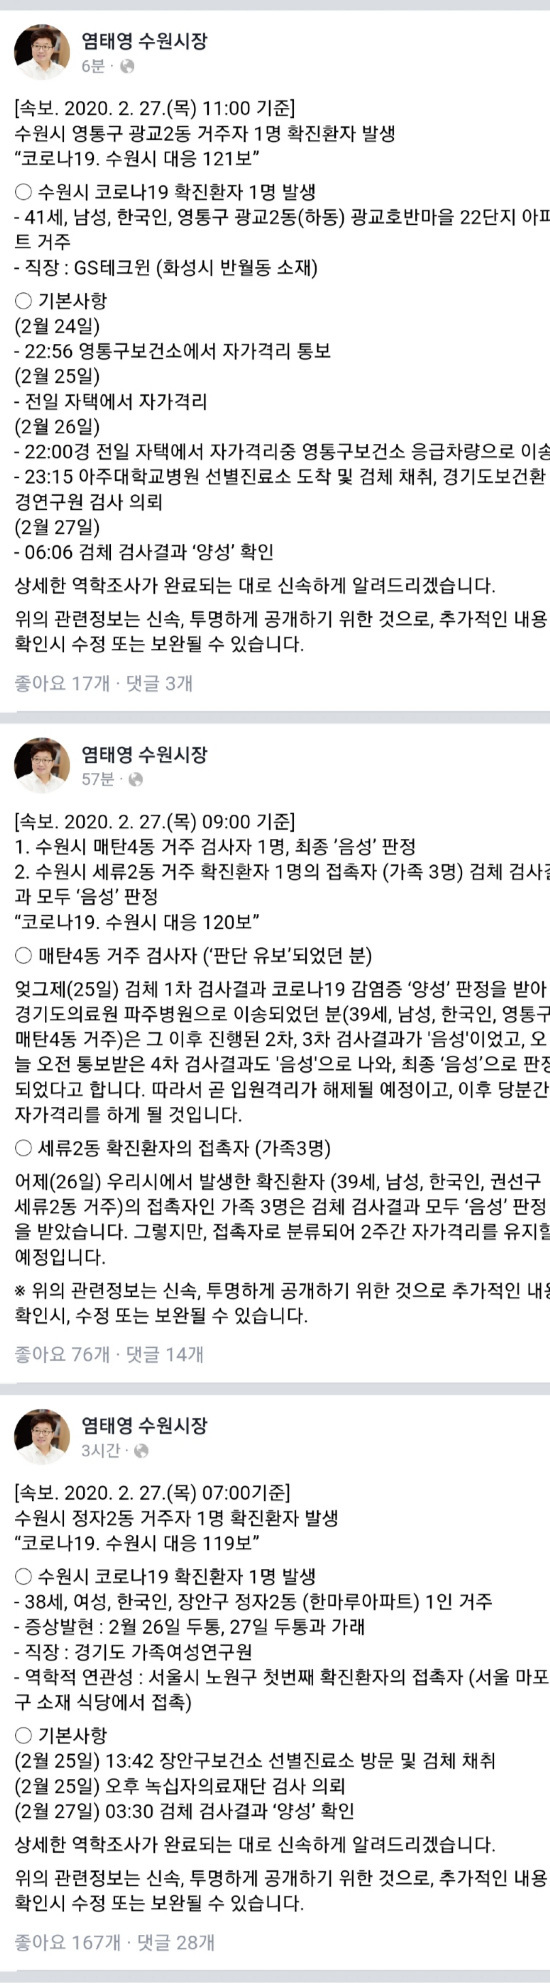 [Corona 19 Status Domestik Suwon-si] Konfirmasi Tambahan Jungja 2-dong dan Gwanggyo 2-dong (berita terbaru)